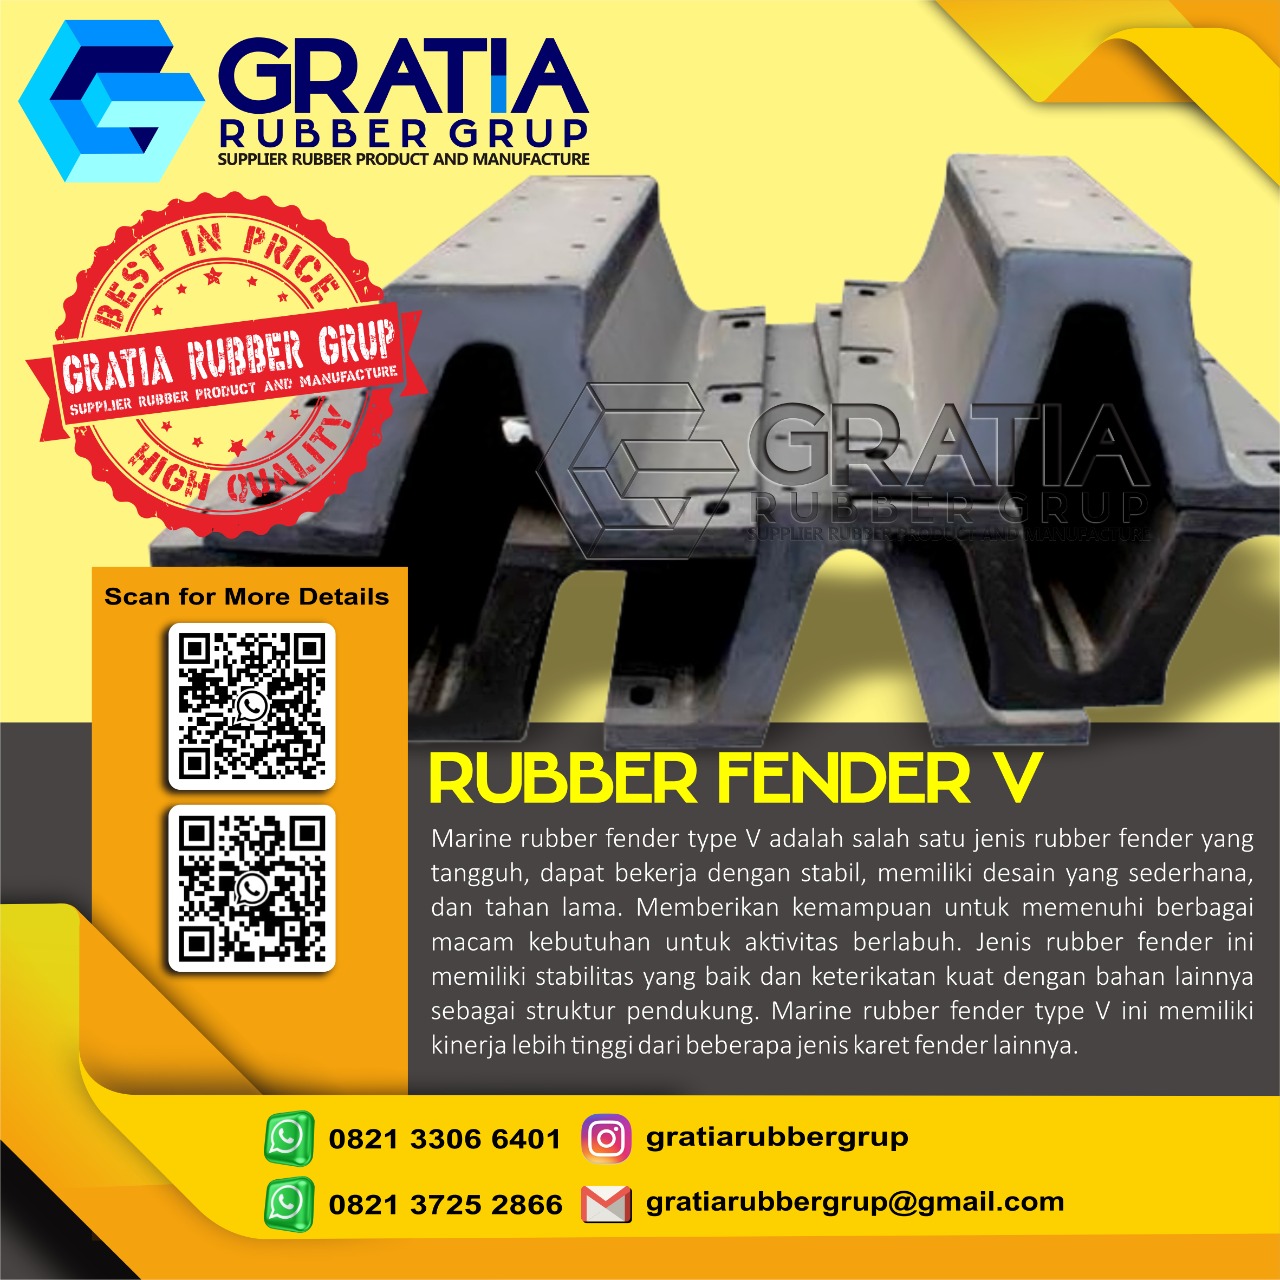 Harga Rubber Fender Murah Dan Berkualitas  Melayani Pengiriman Ke Palu Sulawesi Hub 0821 3306 0461